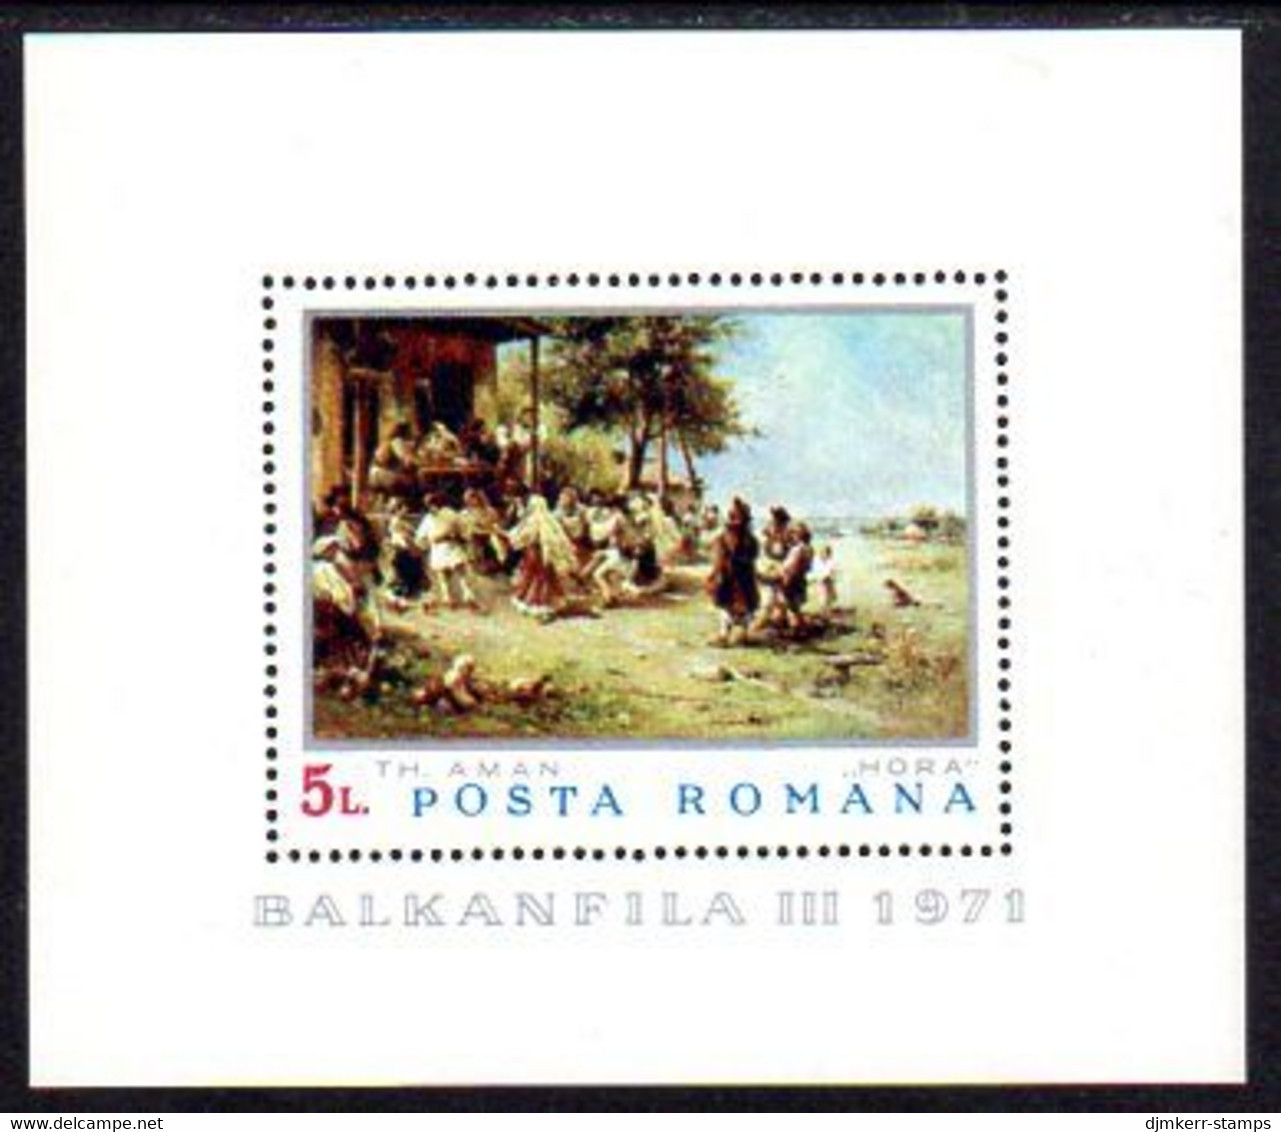 ROMANIA 1971 BALKANFILA III Stamp Exhibition MNH / **.  Block 84 - Ongebruikt